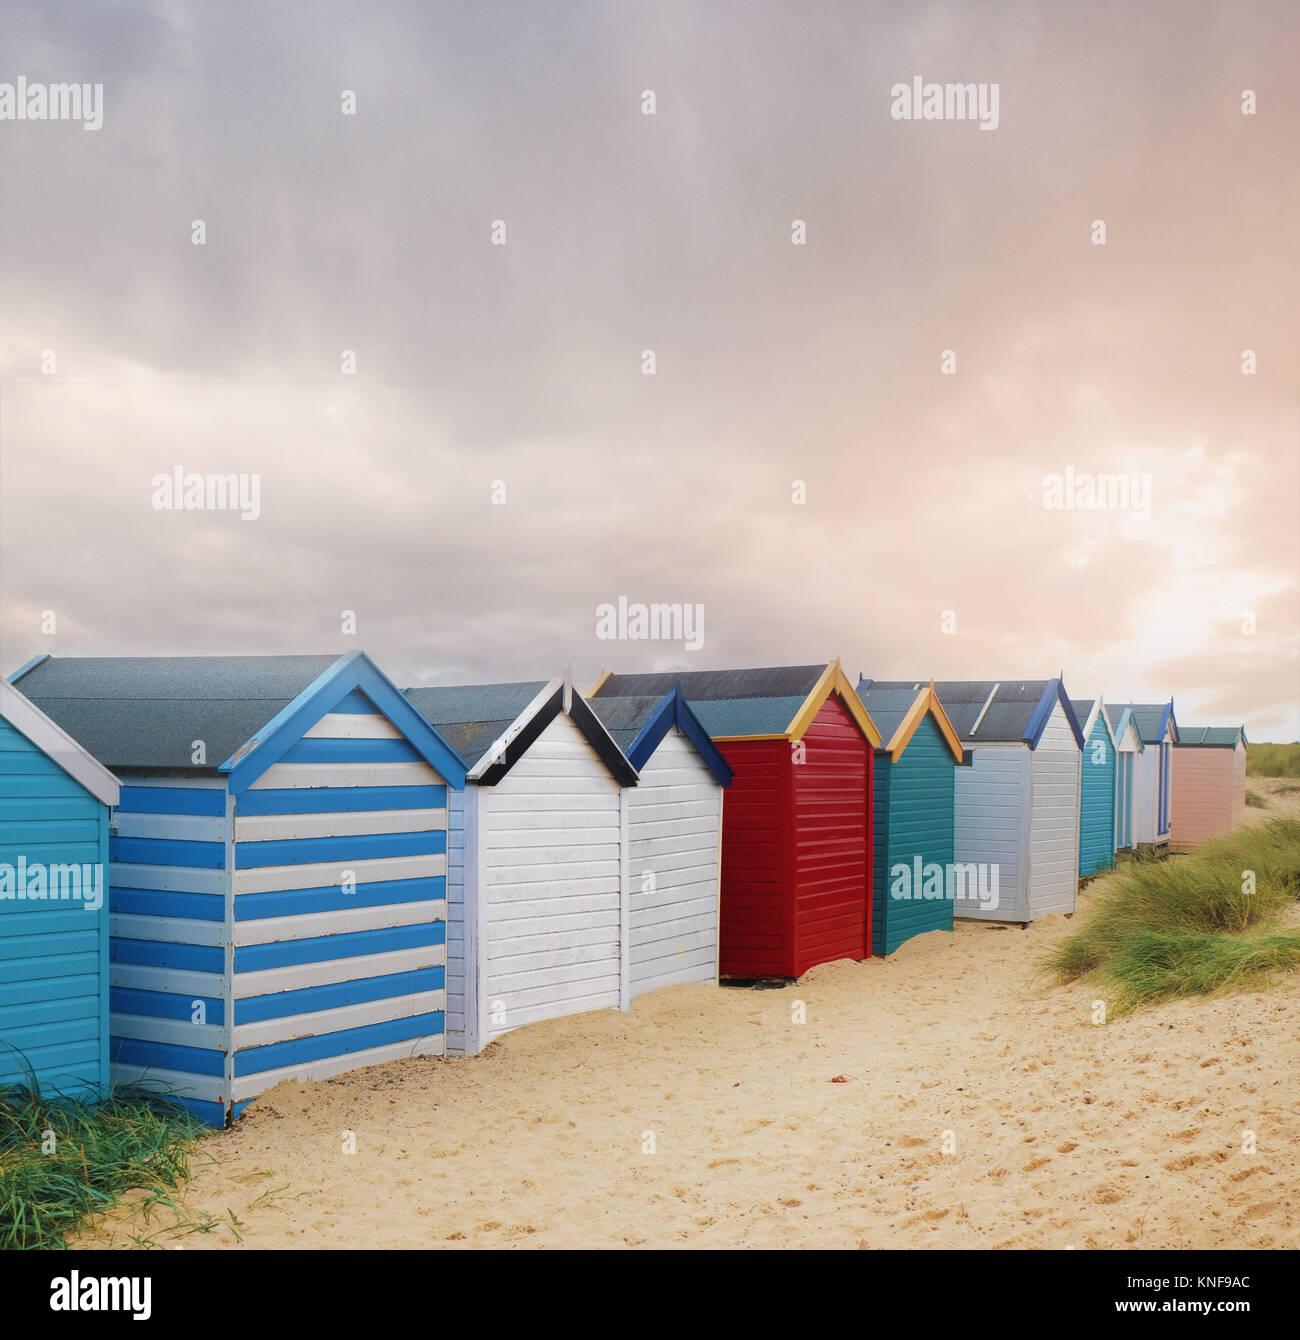 Fila de coloridas casetas de playa y nubes de tormenta, Southwold, Suffolk, Inglaterra Foto de stock